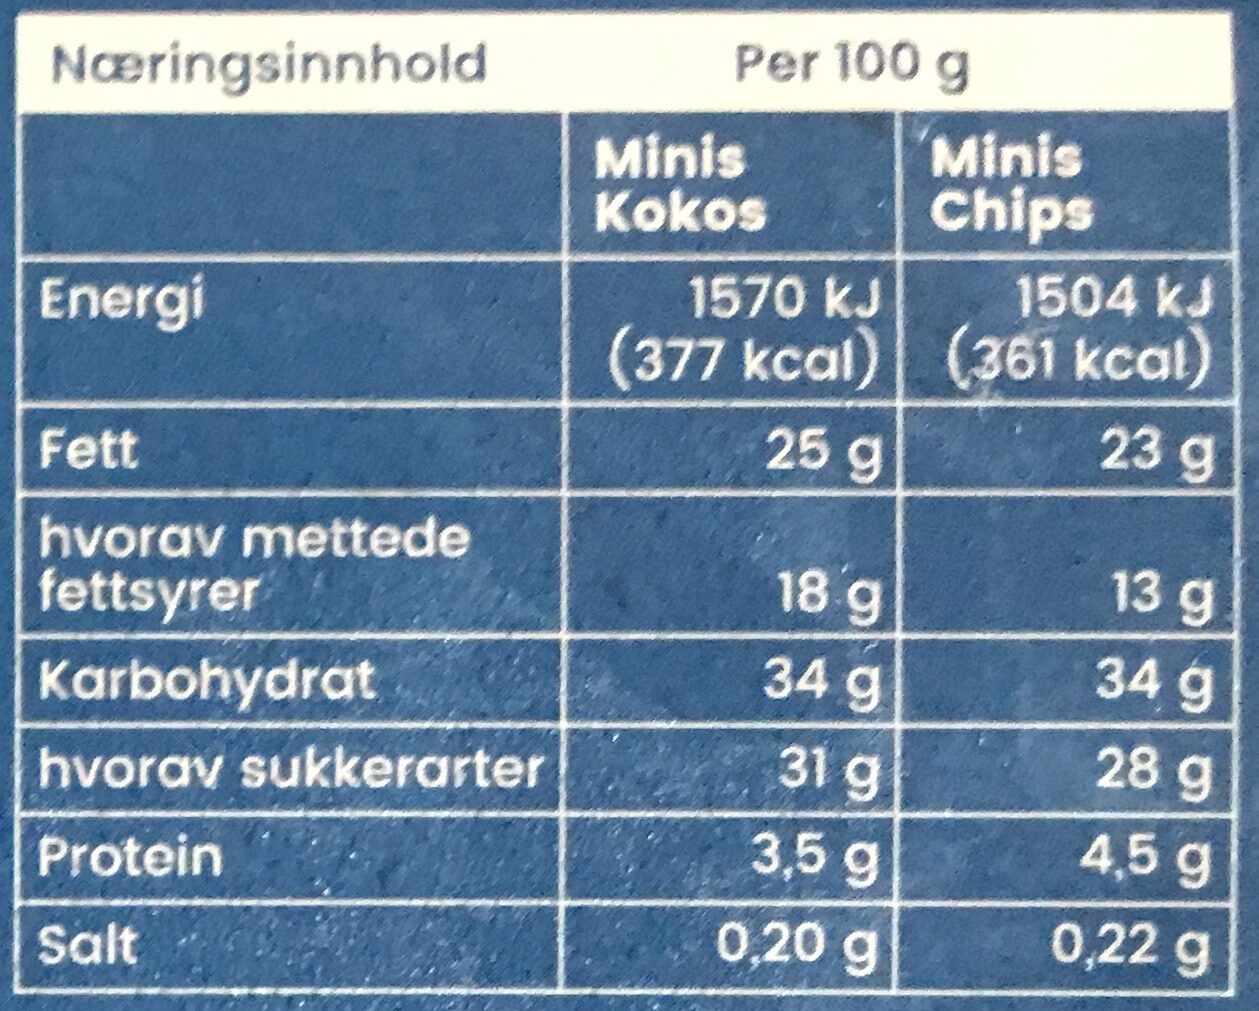 Minis Kokos og Chips - Ernæringsinnhold